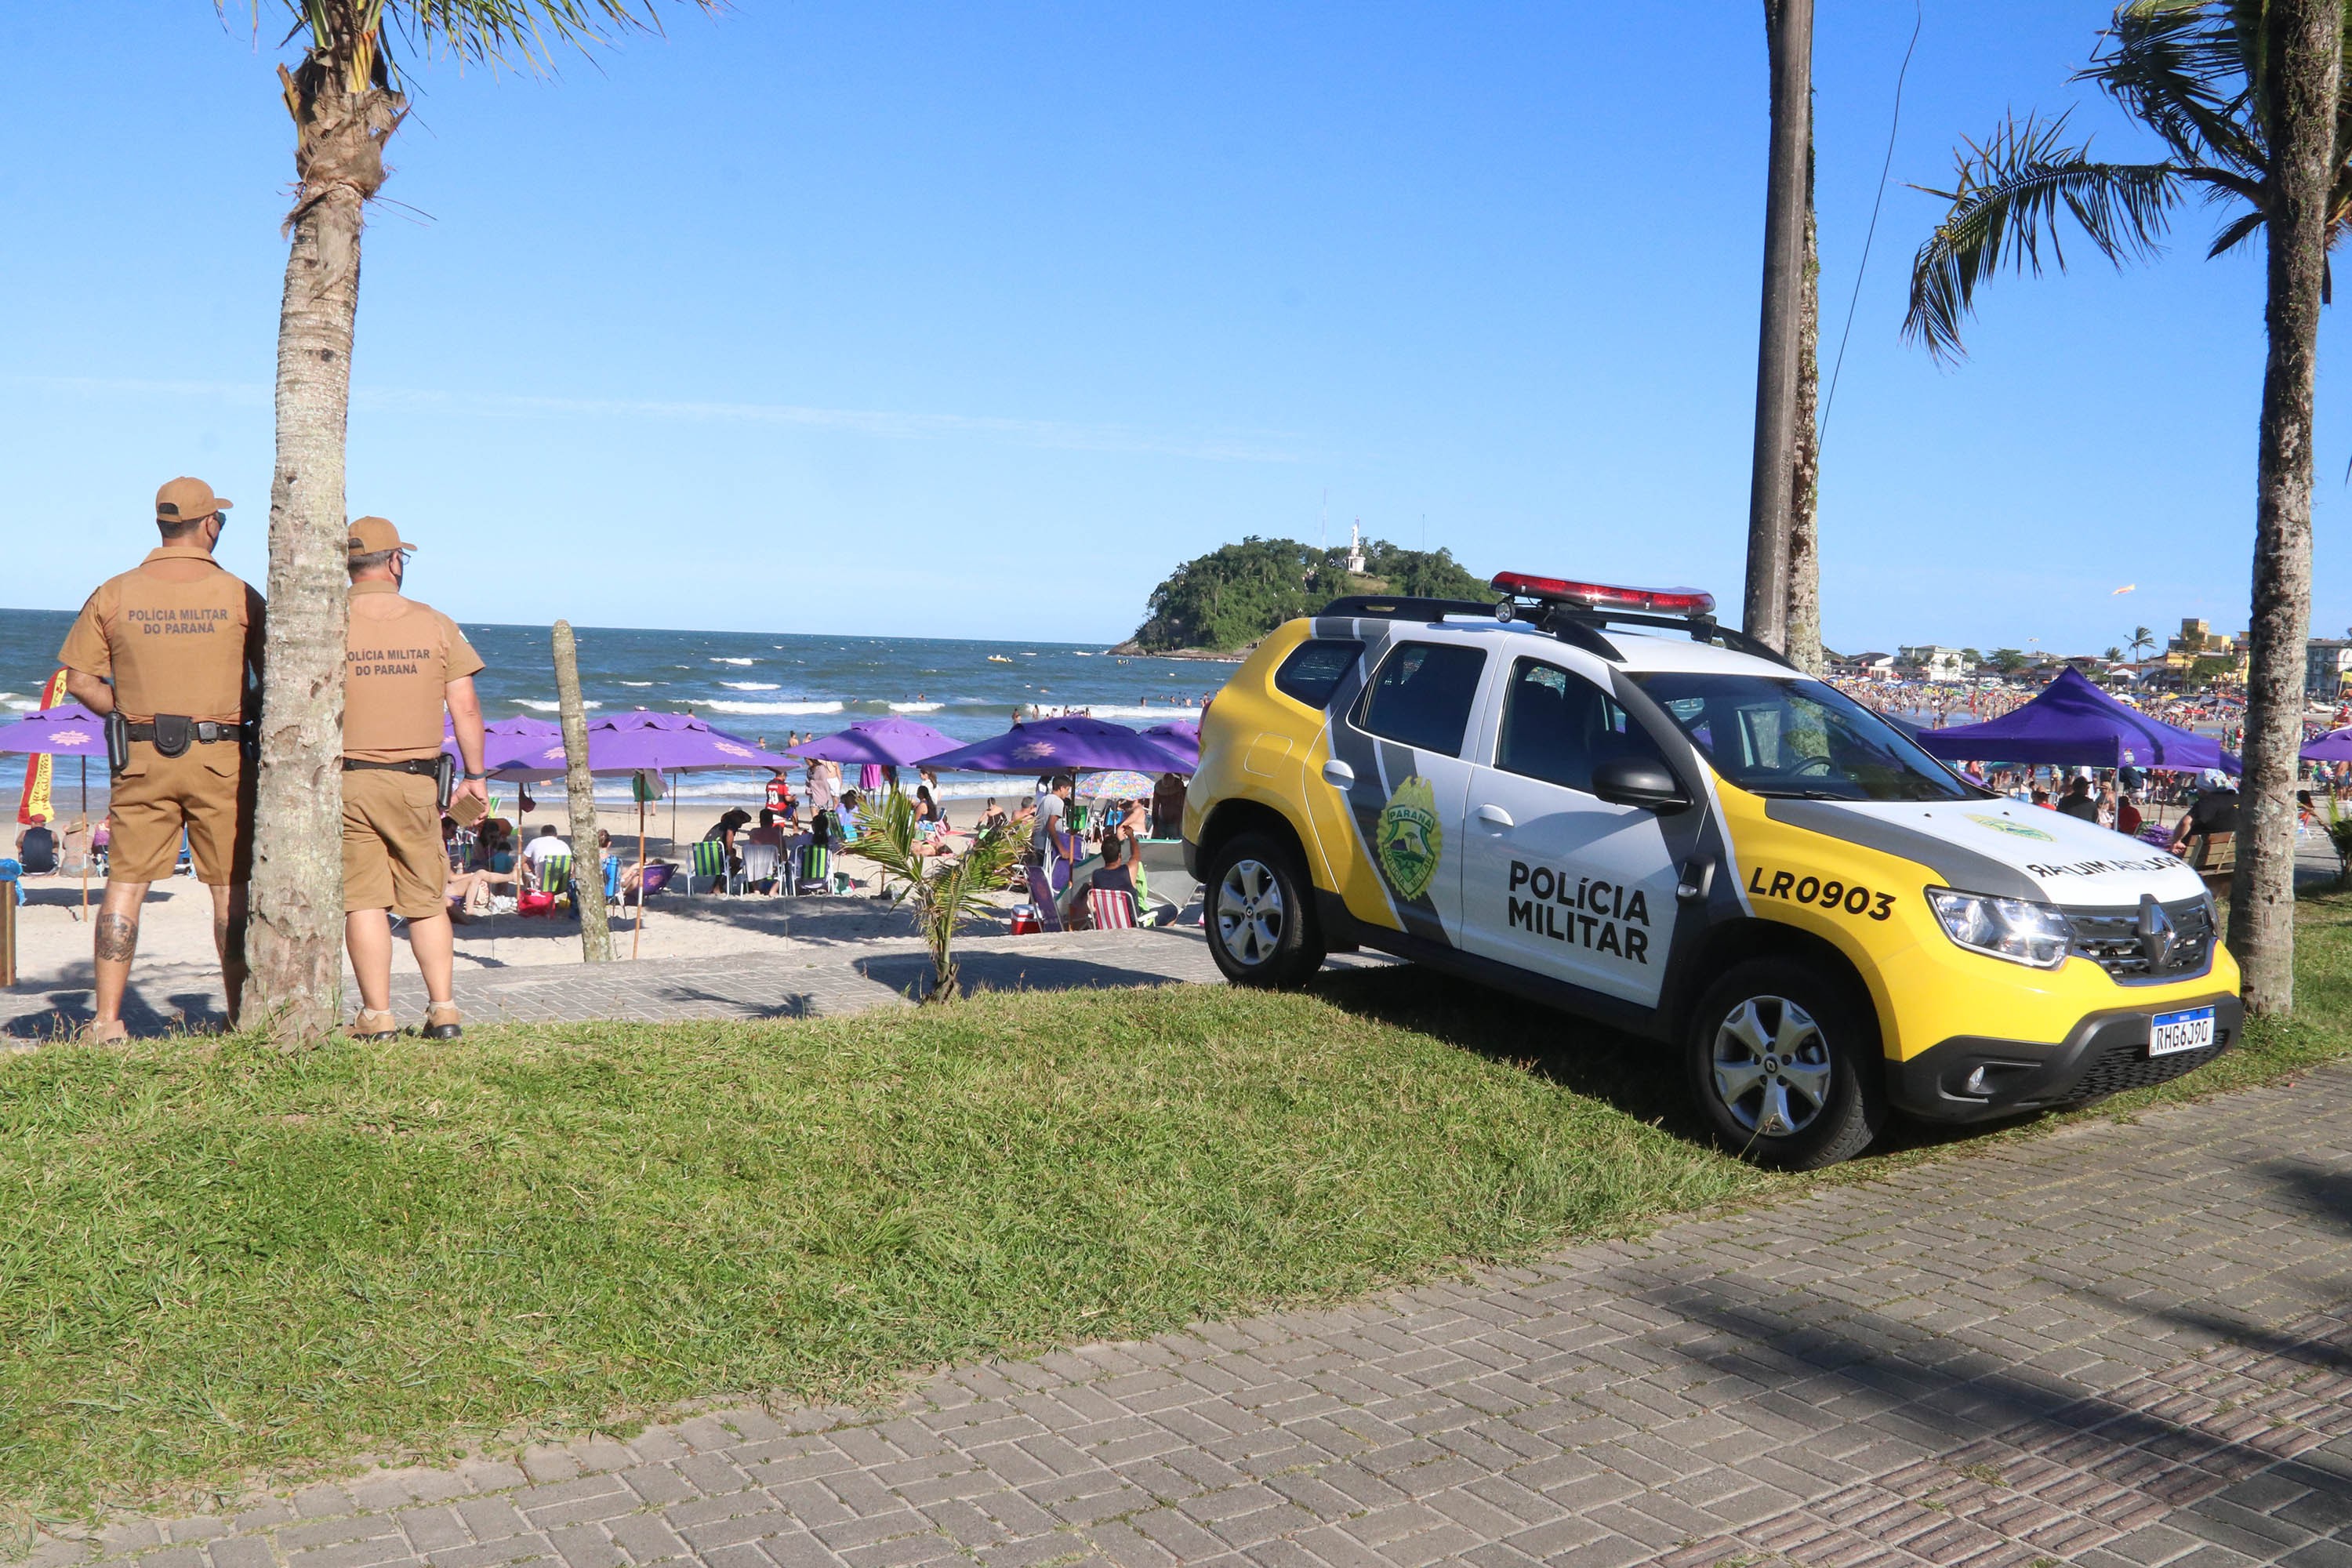 Chamados por perturbação de sossego aumentam em 7 dias de operação no litoral do Paraná, aponta PM